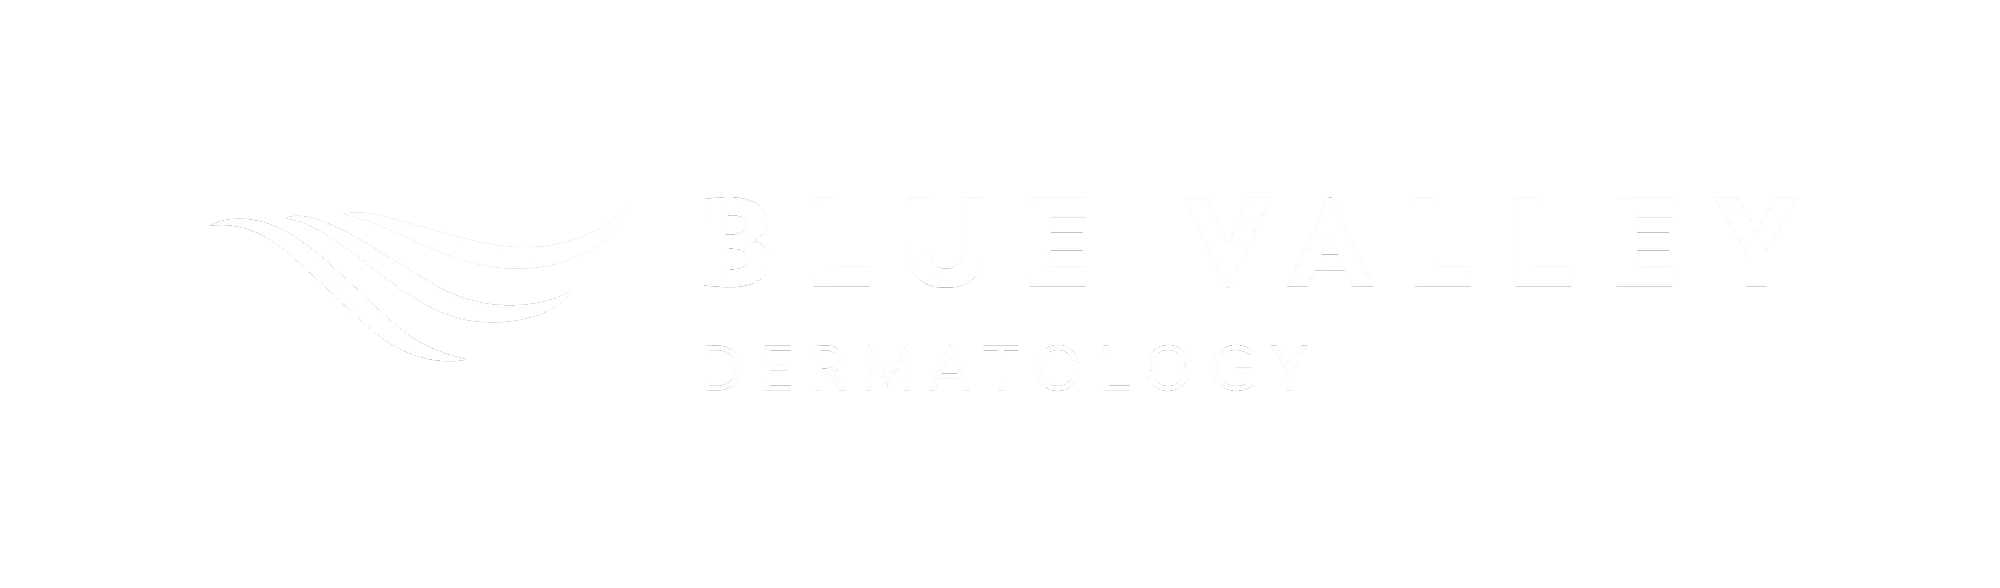 Blue Valley Dermatology